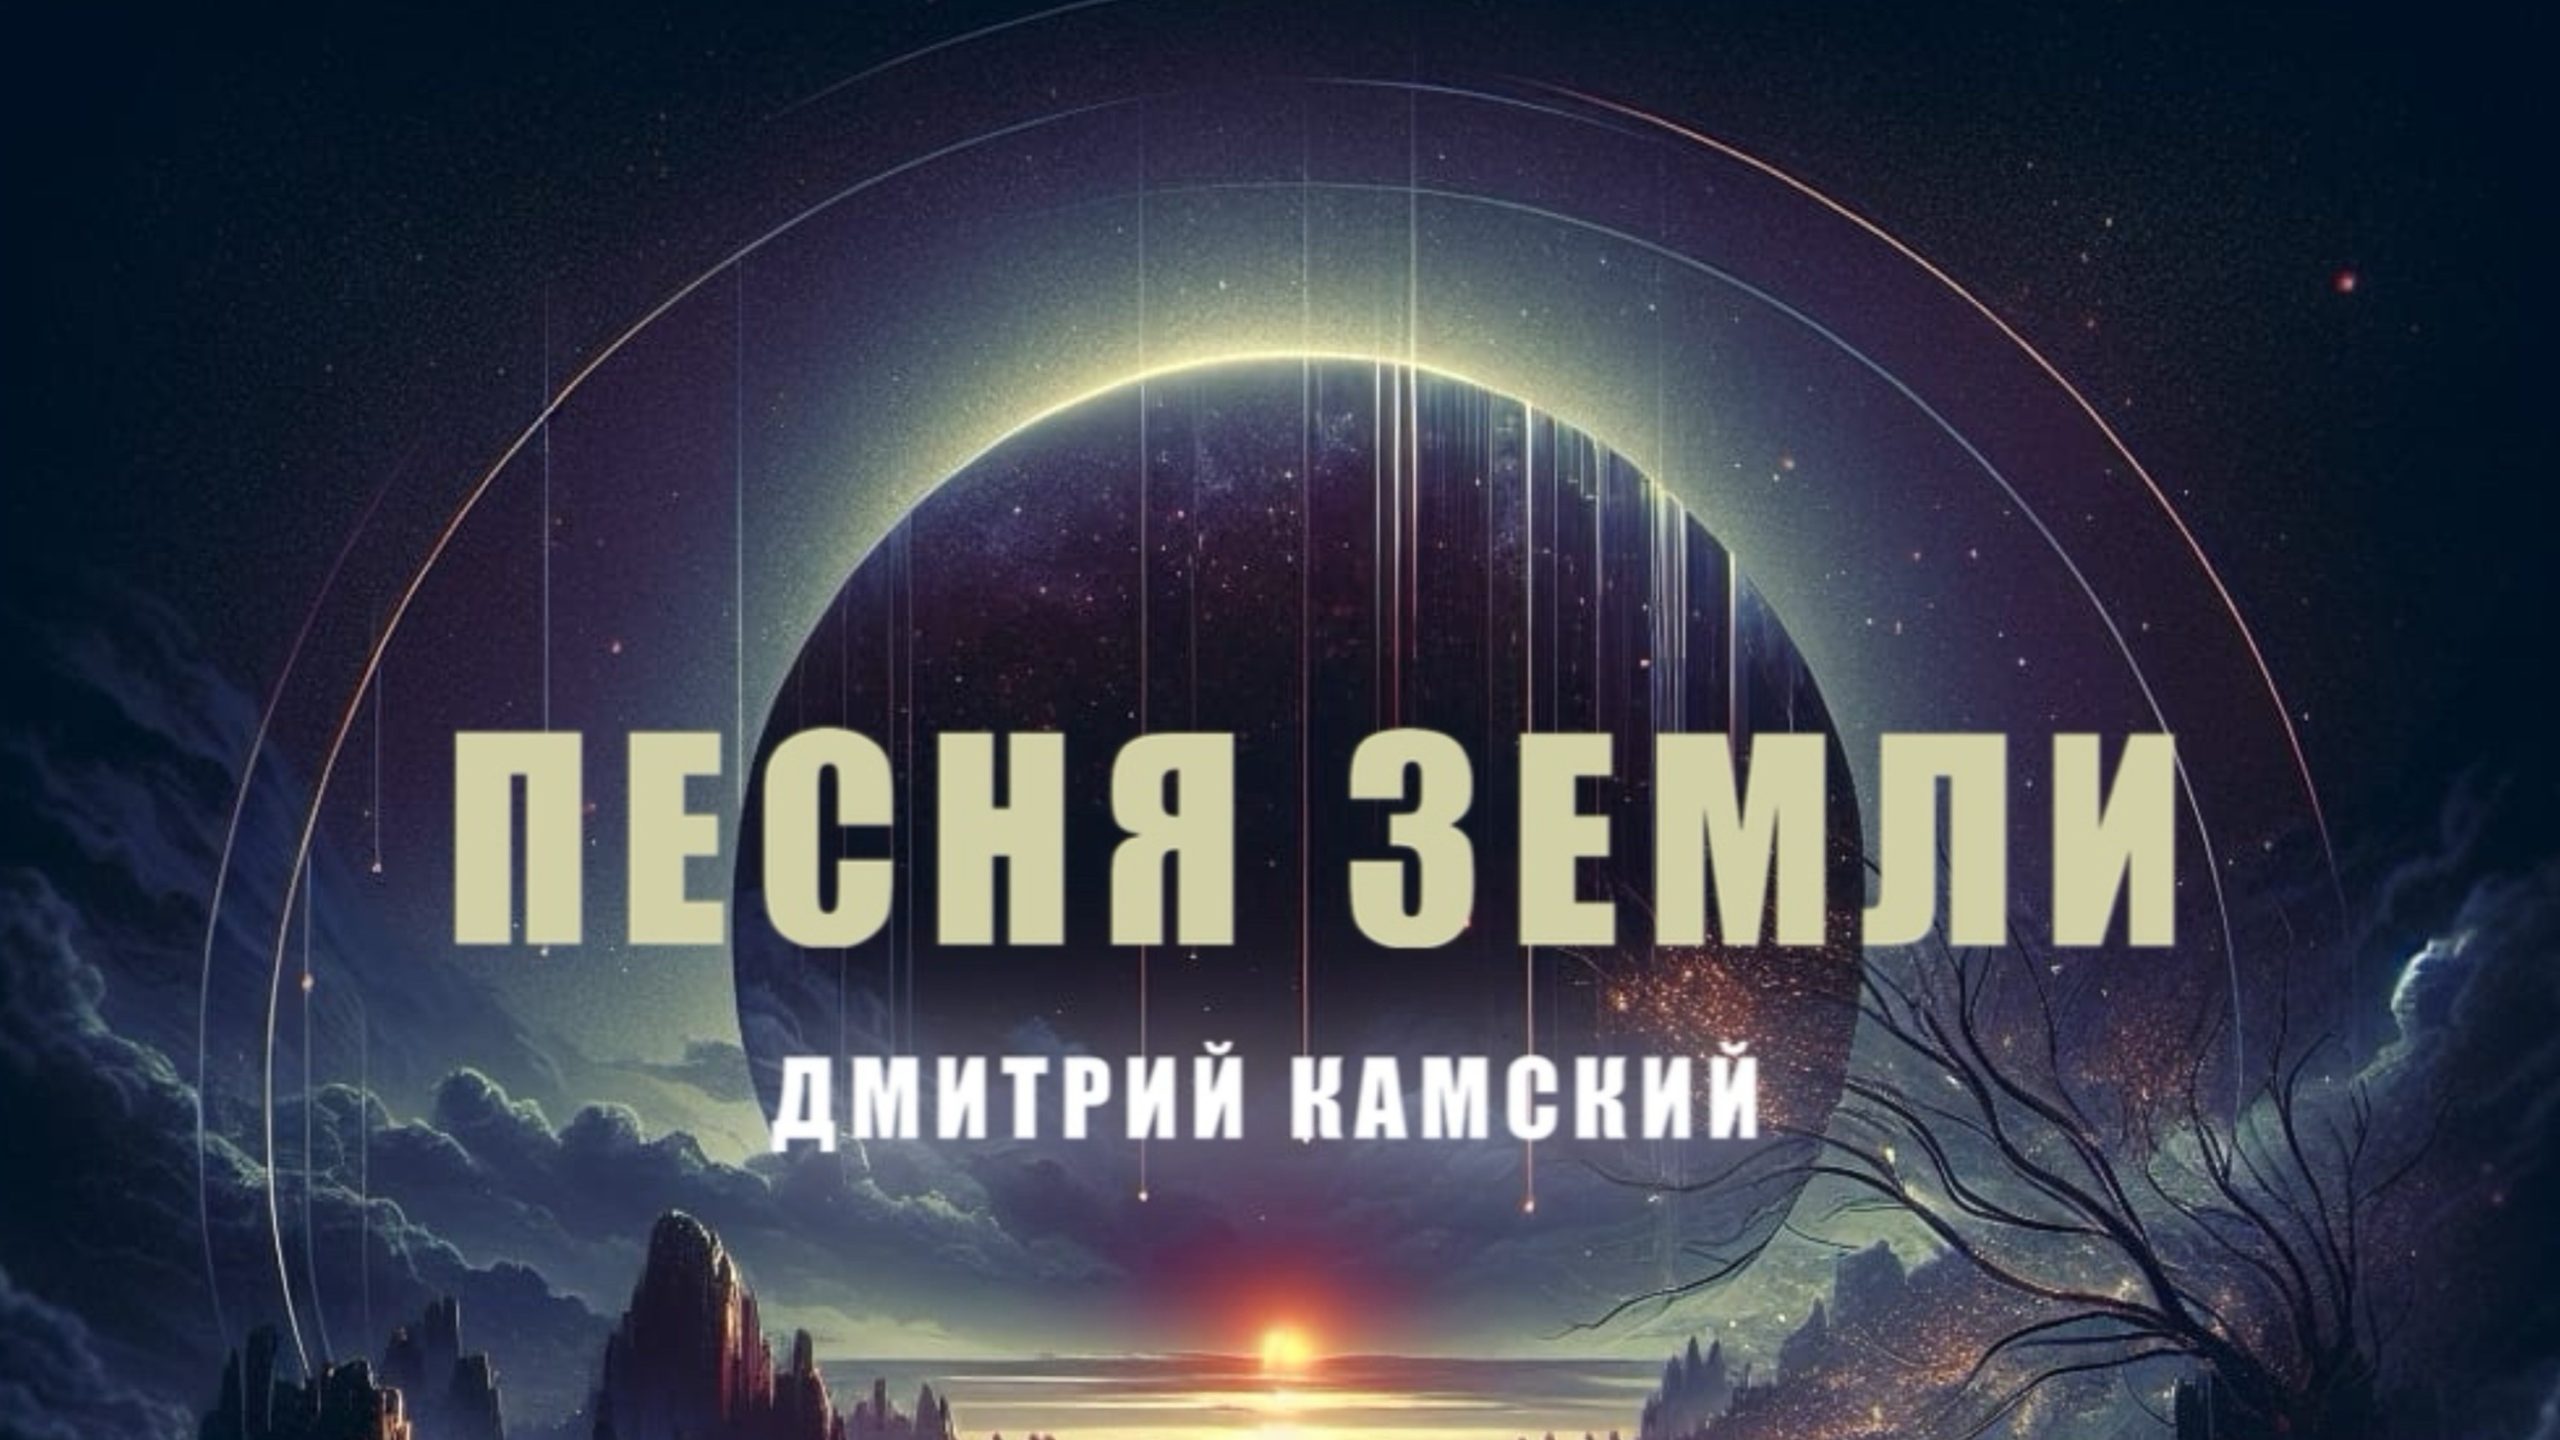 Певец Дмитрий Камский готовит к релизу новый сингл 